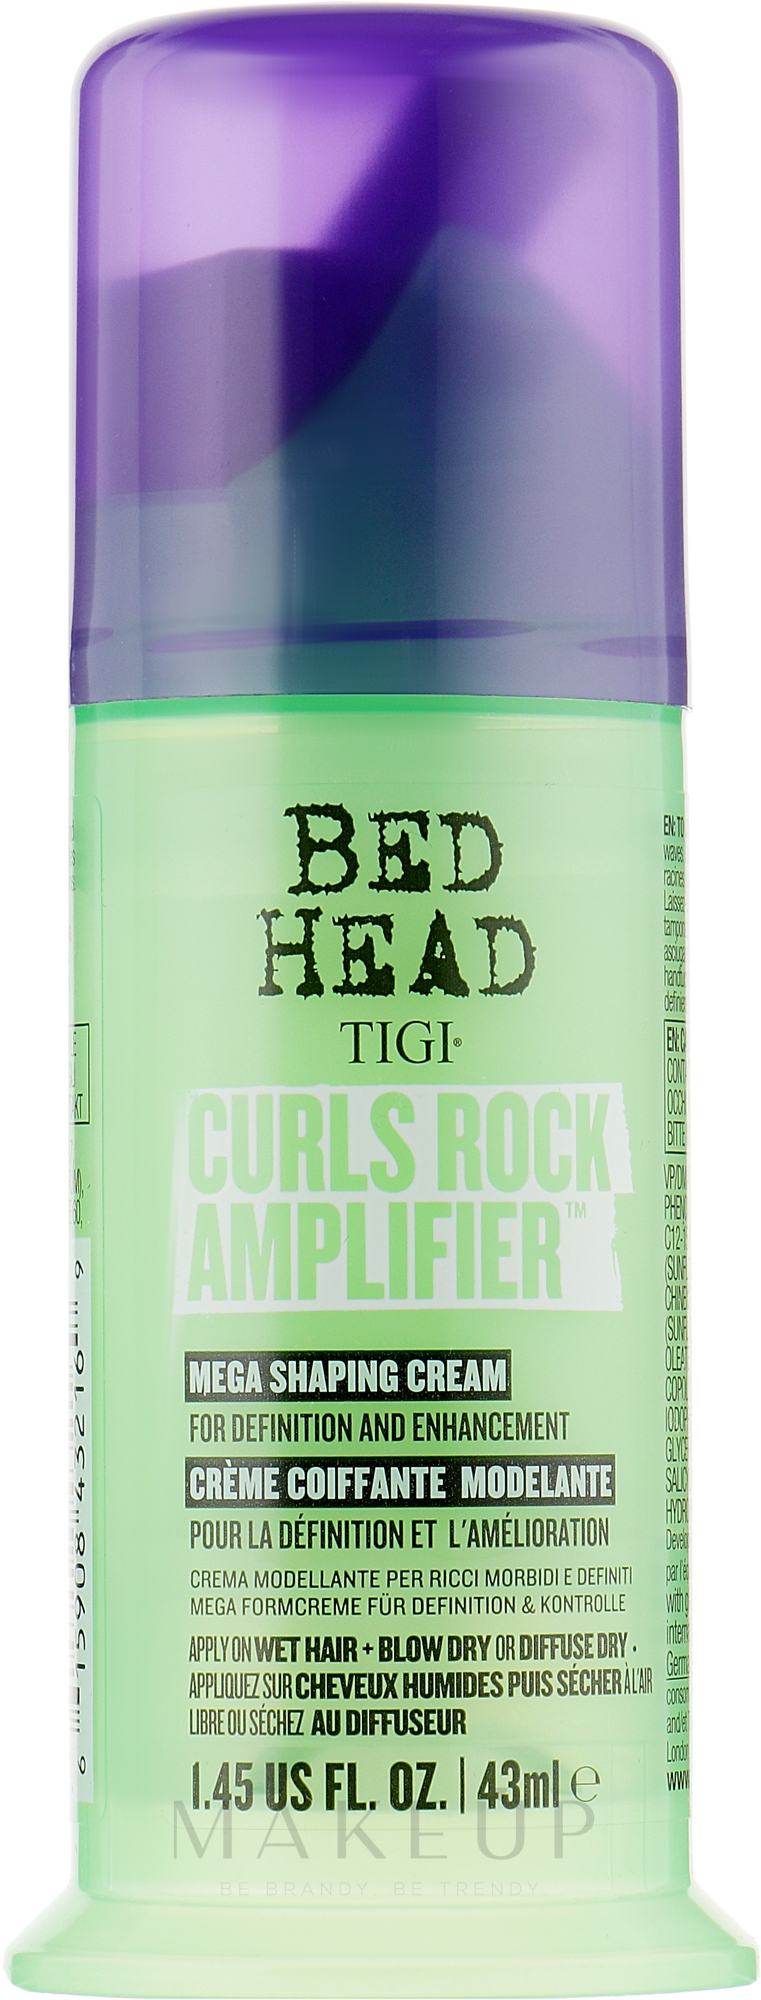 Creme für lockiges Haar - Tigi Bed Head Curls Rock Amplifier Curly Hair Cream — Bild 43 ml